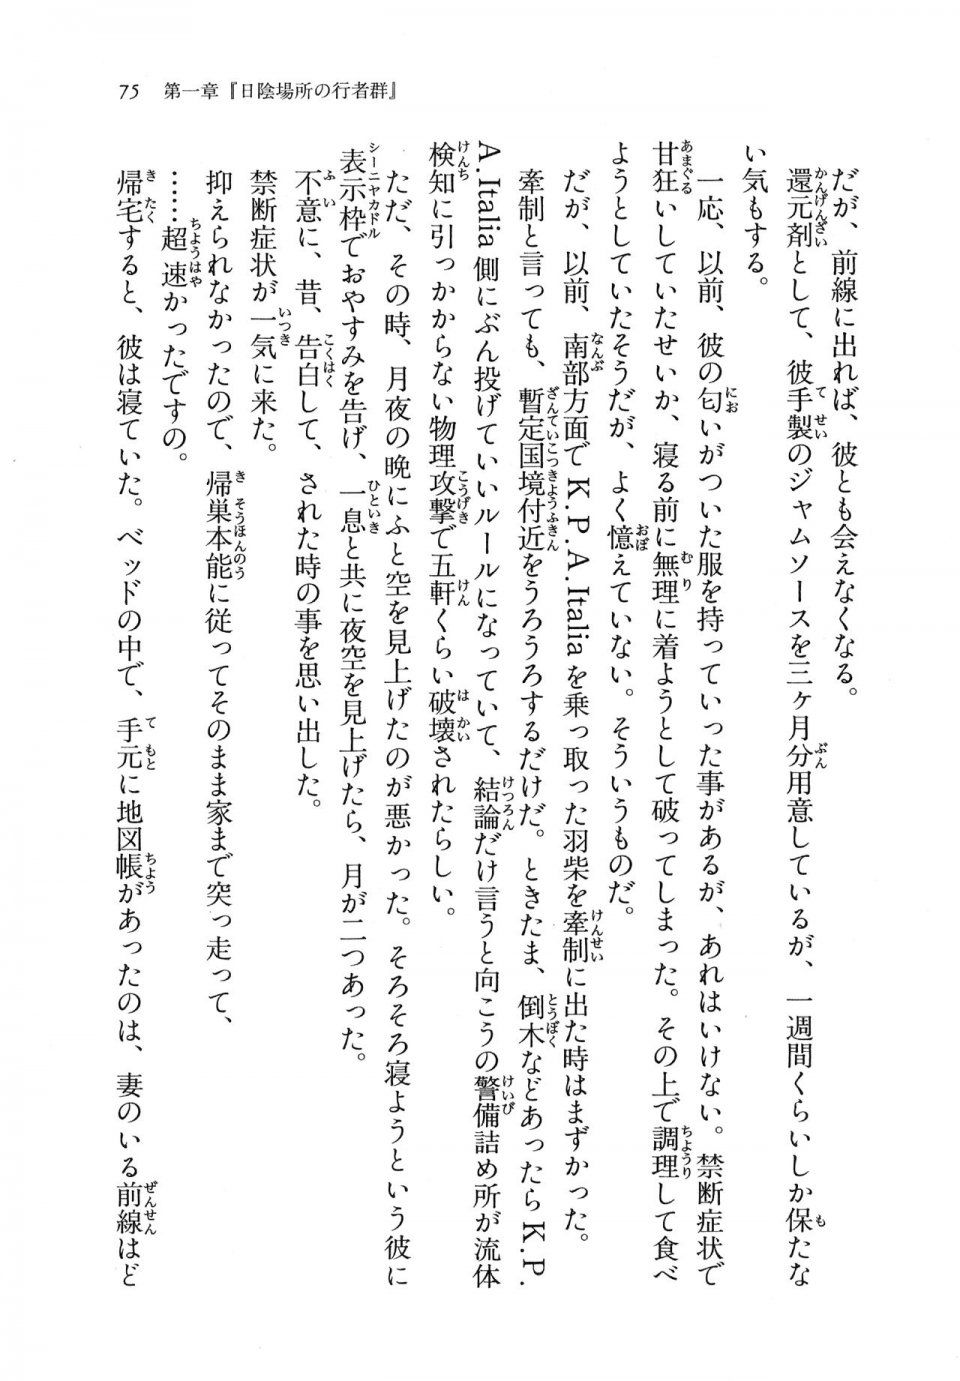 Kyoukai Senjou no Horizon LN Vol 11(5A) - Photo #75